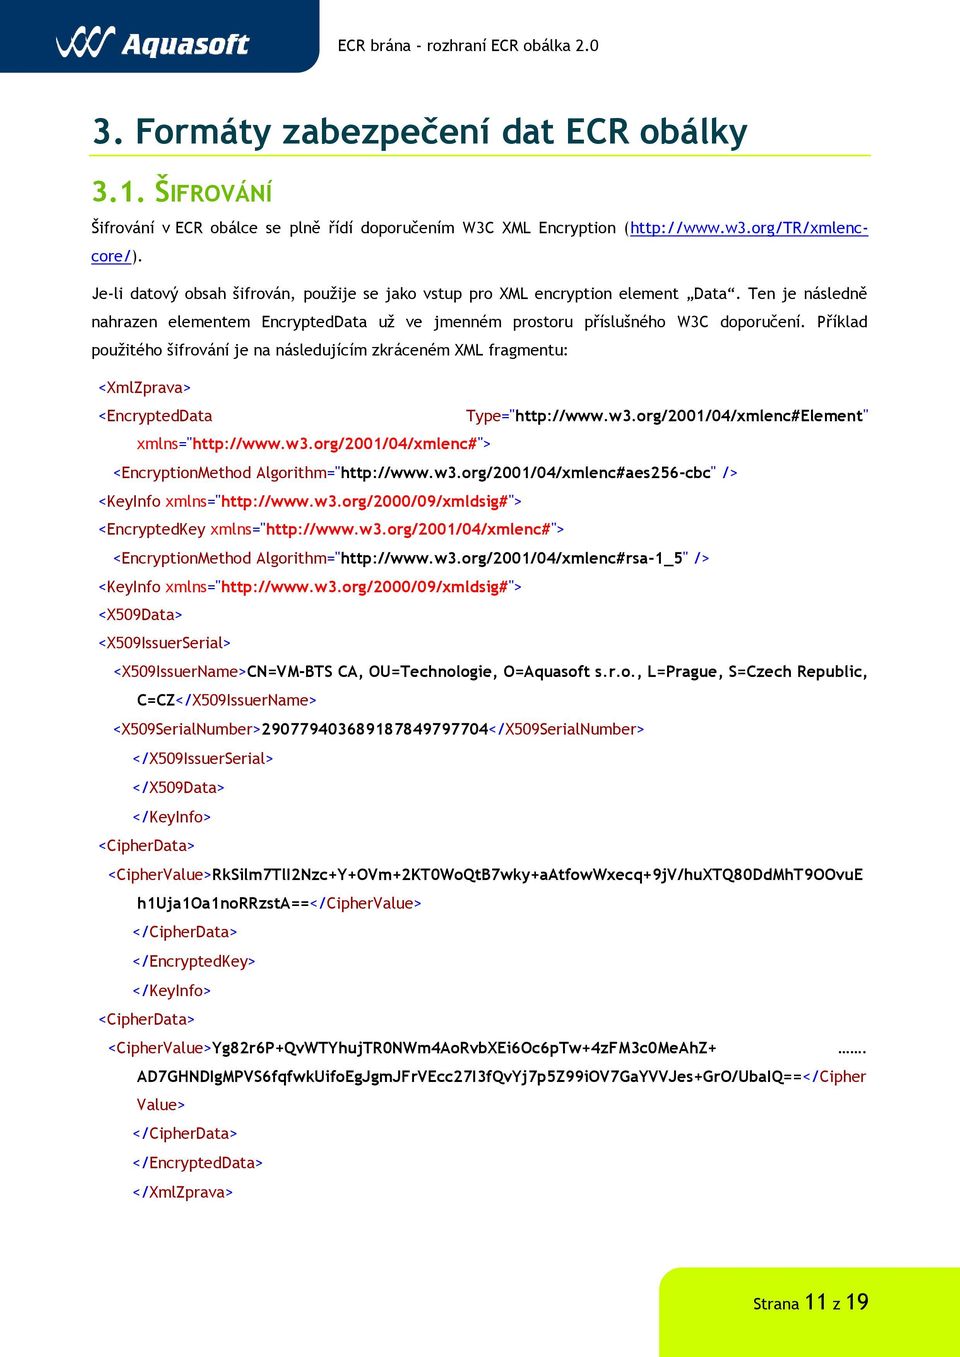 Příklad použitého šifrování je na následujícím zkráceném XML fragmentu: <XmlZprava> <EncryptedData Type="http://www.w3.org/2001/04/xmlenc#Element" xmlns="http://www.w3.org/2001/04/xmlenc#"> <EncryptionMethod Algorithm="http://www.